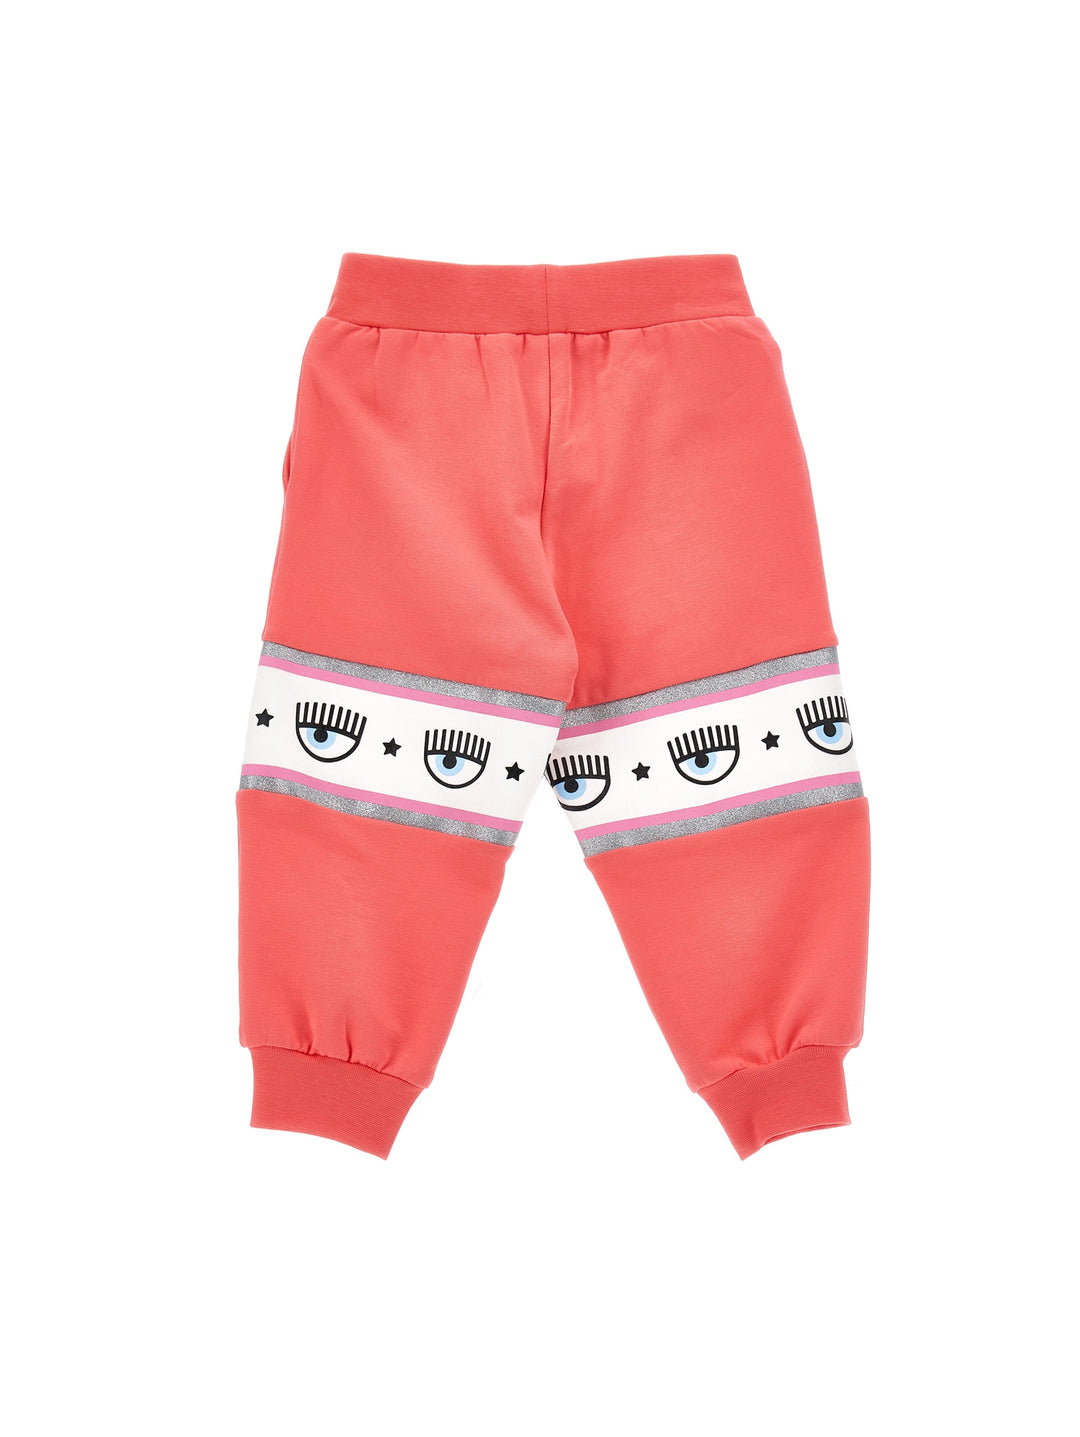 Pantalone rosa con stampa logata